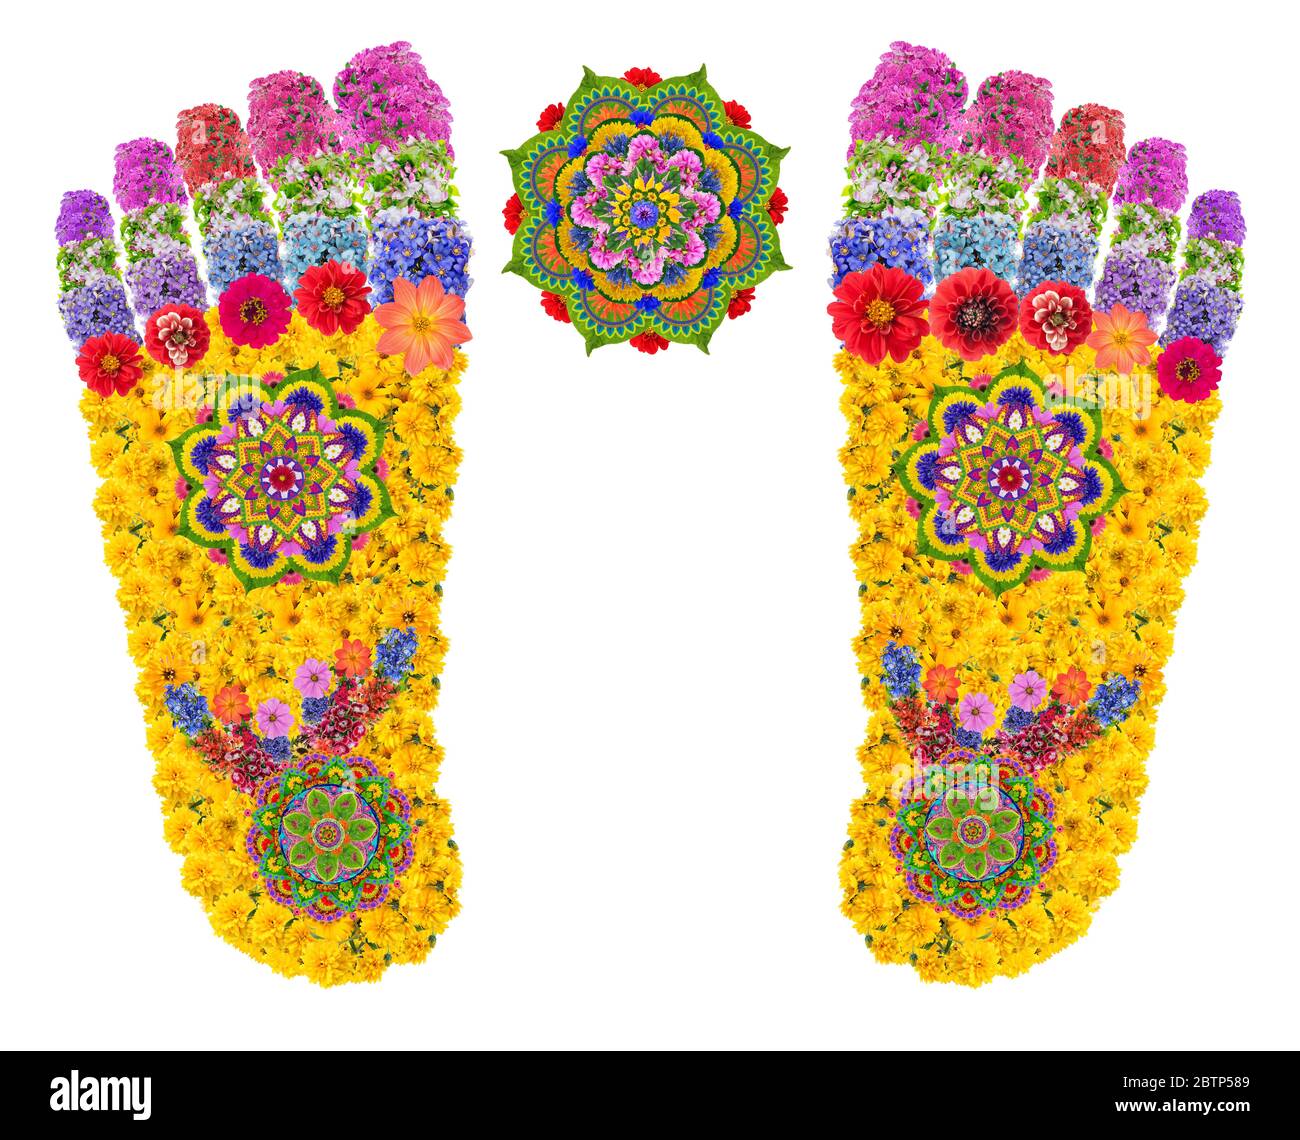 Le impronte dei piedi del Buddha simboleggiano il cammino degli dei e significano una presenza divina o una visita ad una persona Santa. Questa è una traccia di una divinità che un per Foto Stock